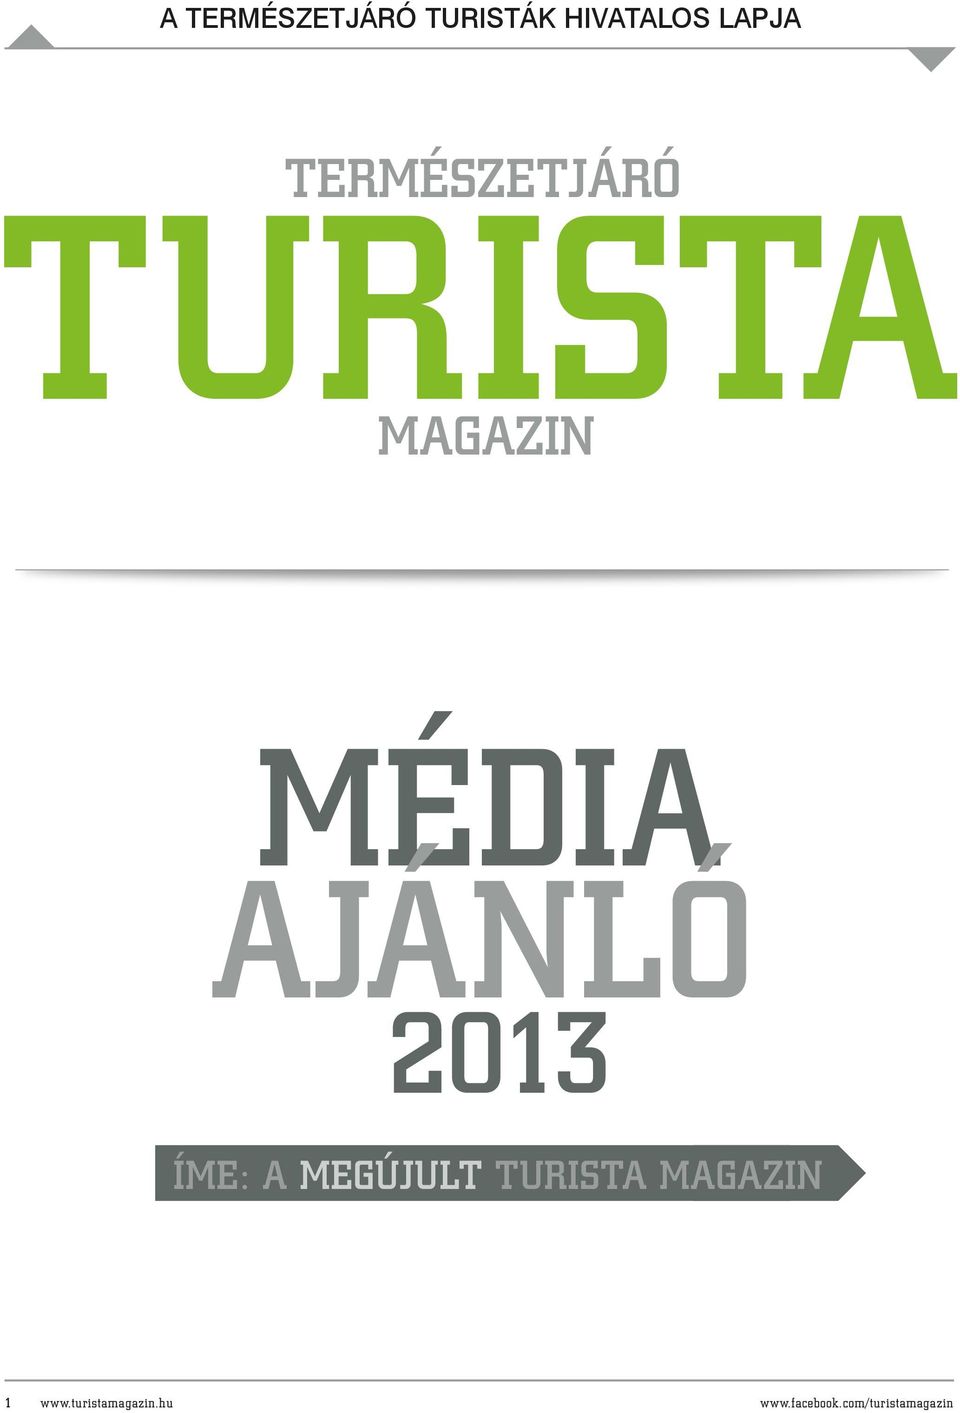 média ajánló 2013 íme: a megújult